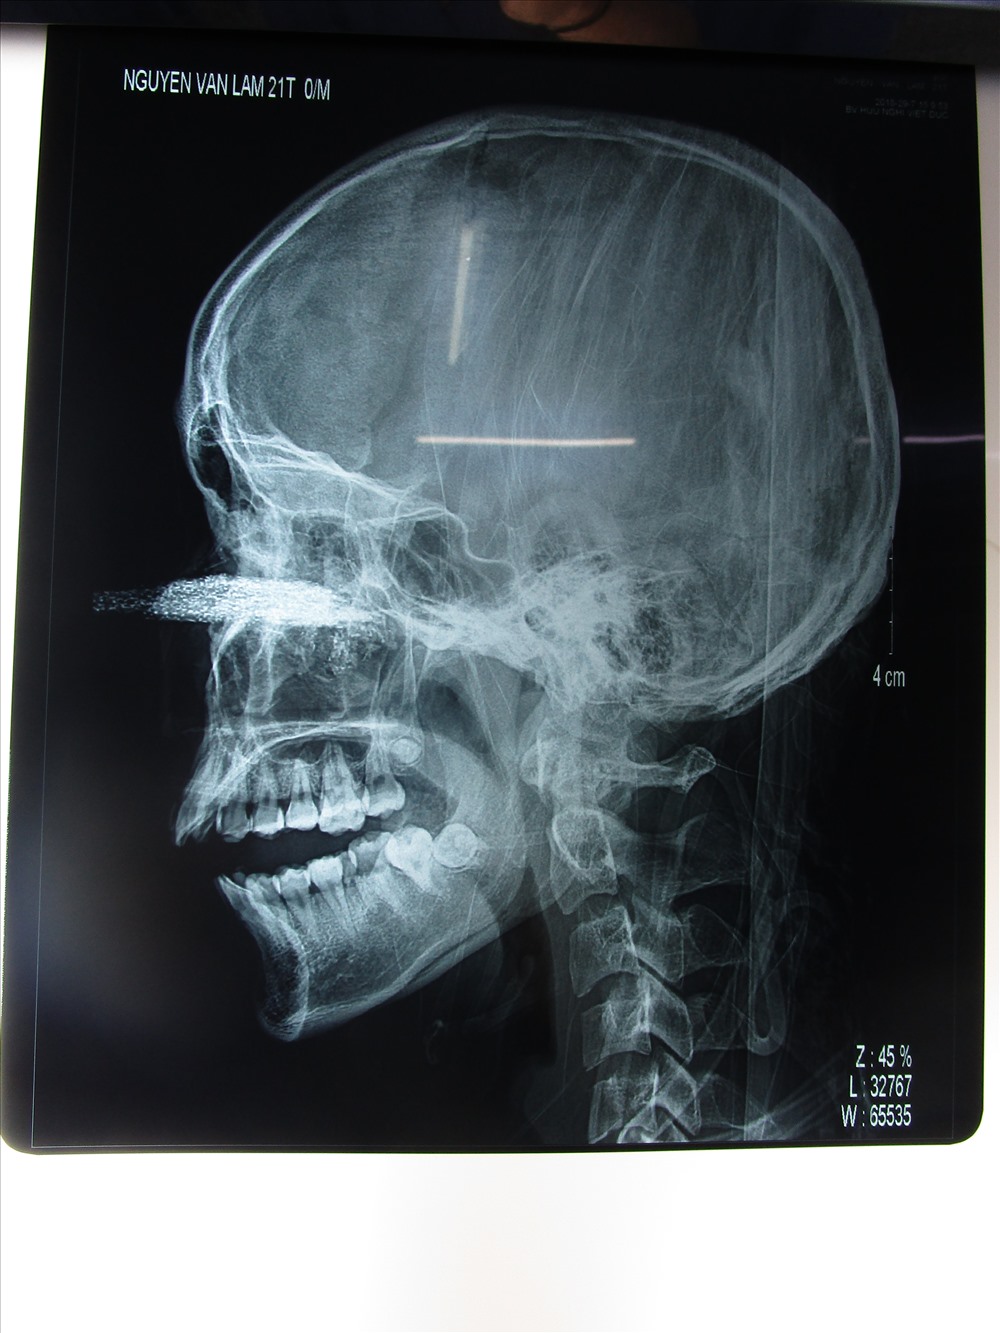 Hình chụp Xquang cho thấy lưỡi cưa găm sâu vào mặt. Ảnh: BSCC